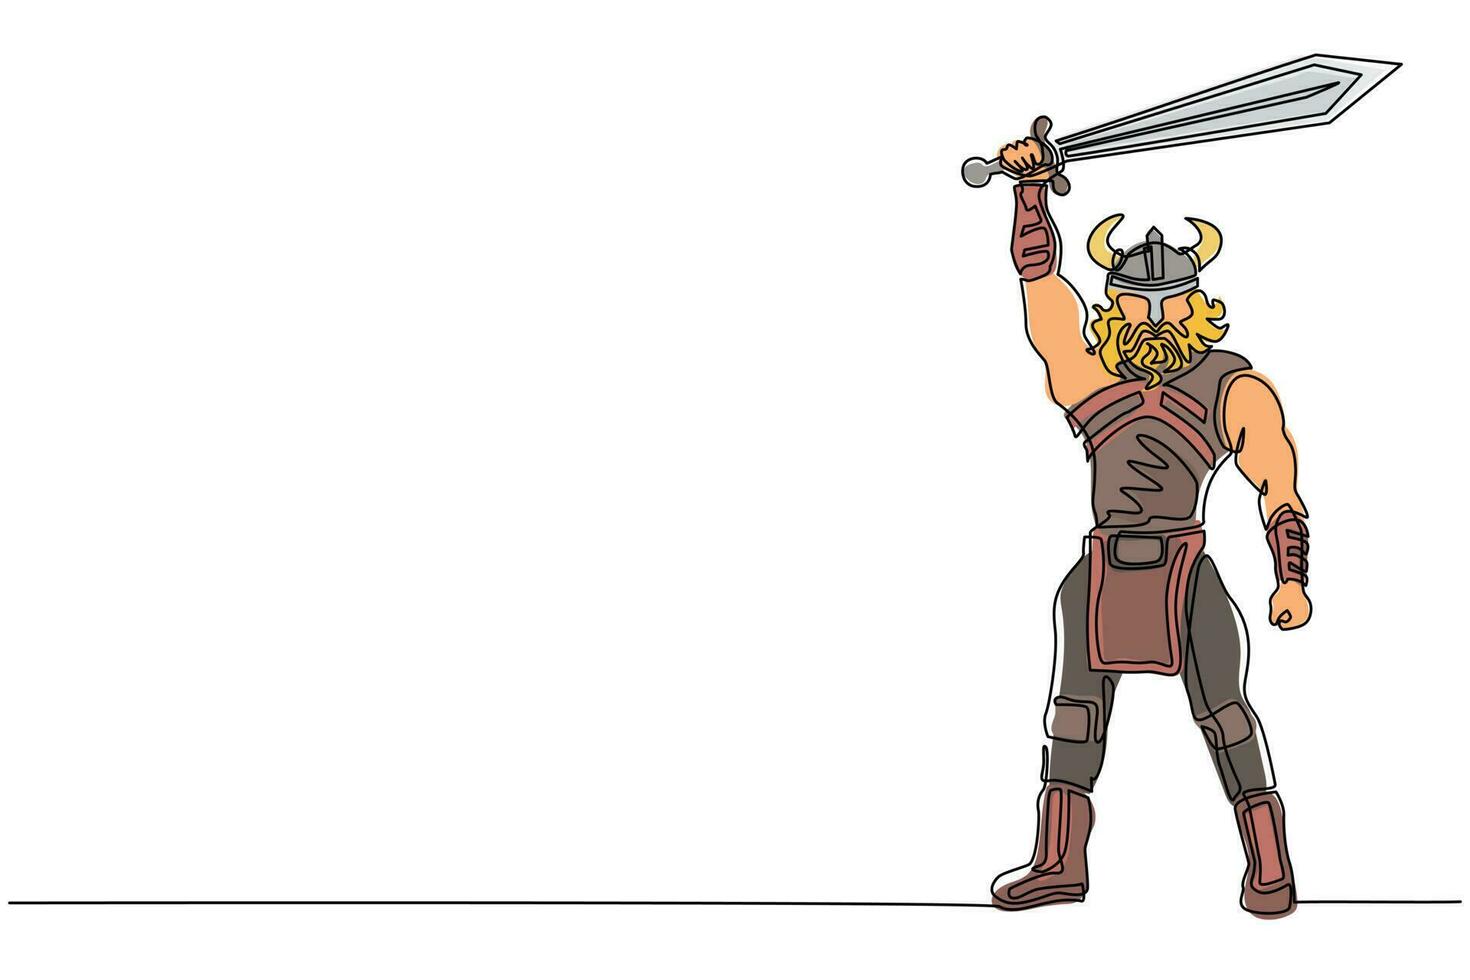 unico disegno a linea continua uomo nordico che tiene la spada in aria. vettore di guerriero che indossa un'armatura da guerra vichinga. personaggio della mitologia pagana e scandinava. illustrazione di un disegno di linea